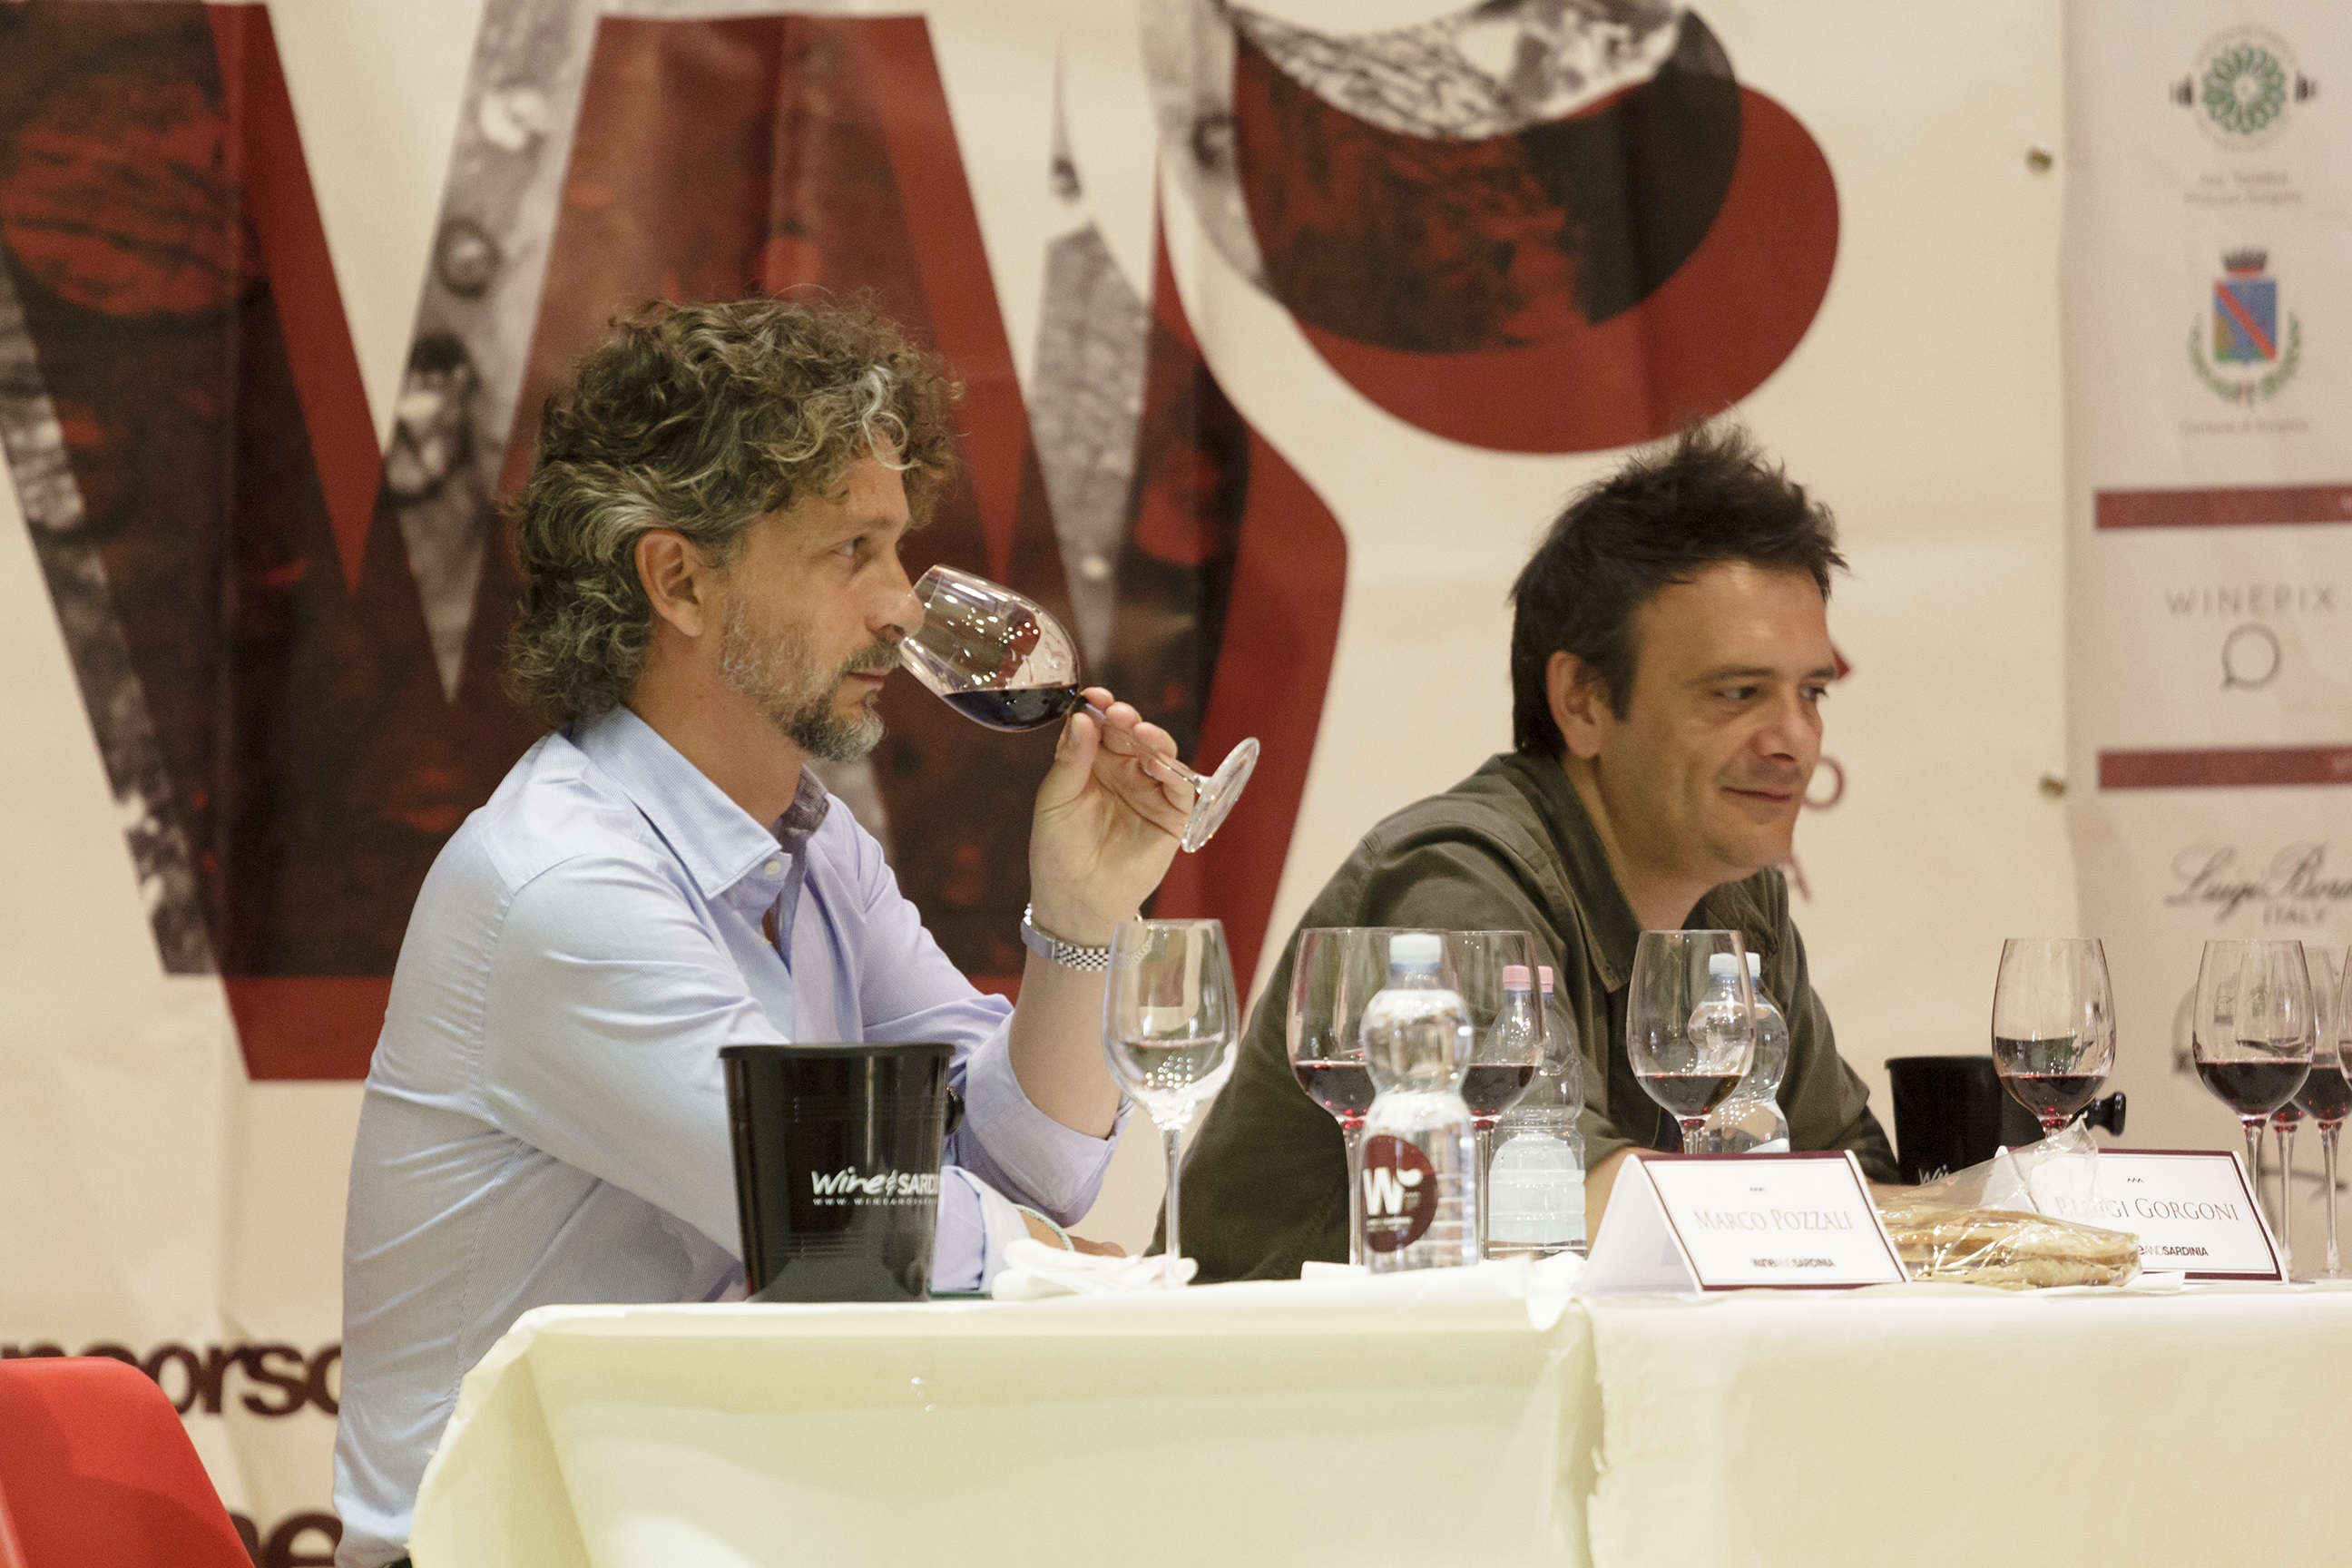 Wine and Sardinia 2018 – Al via la 5a edizione del Concorso enologico sardo